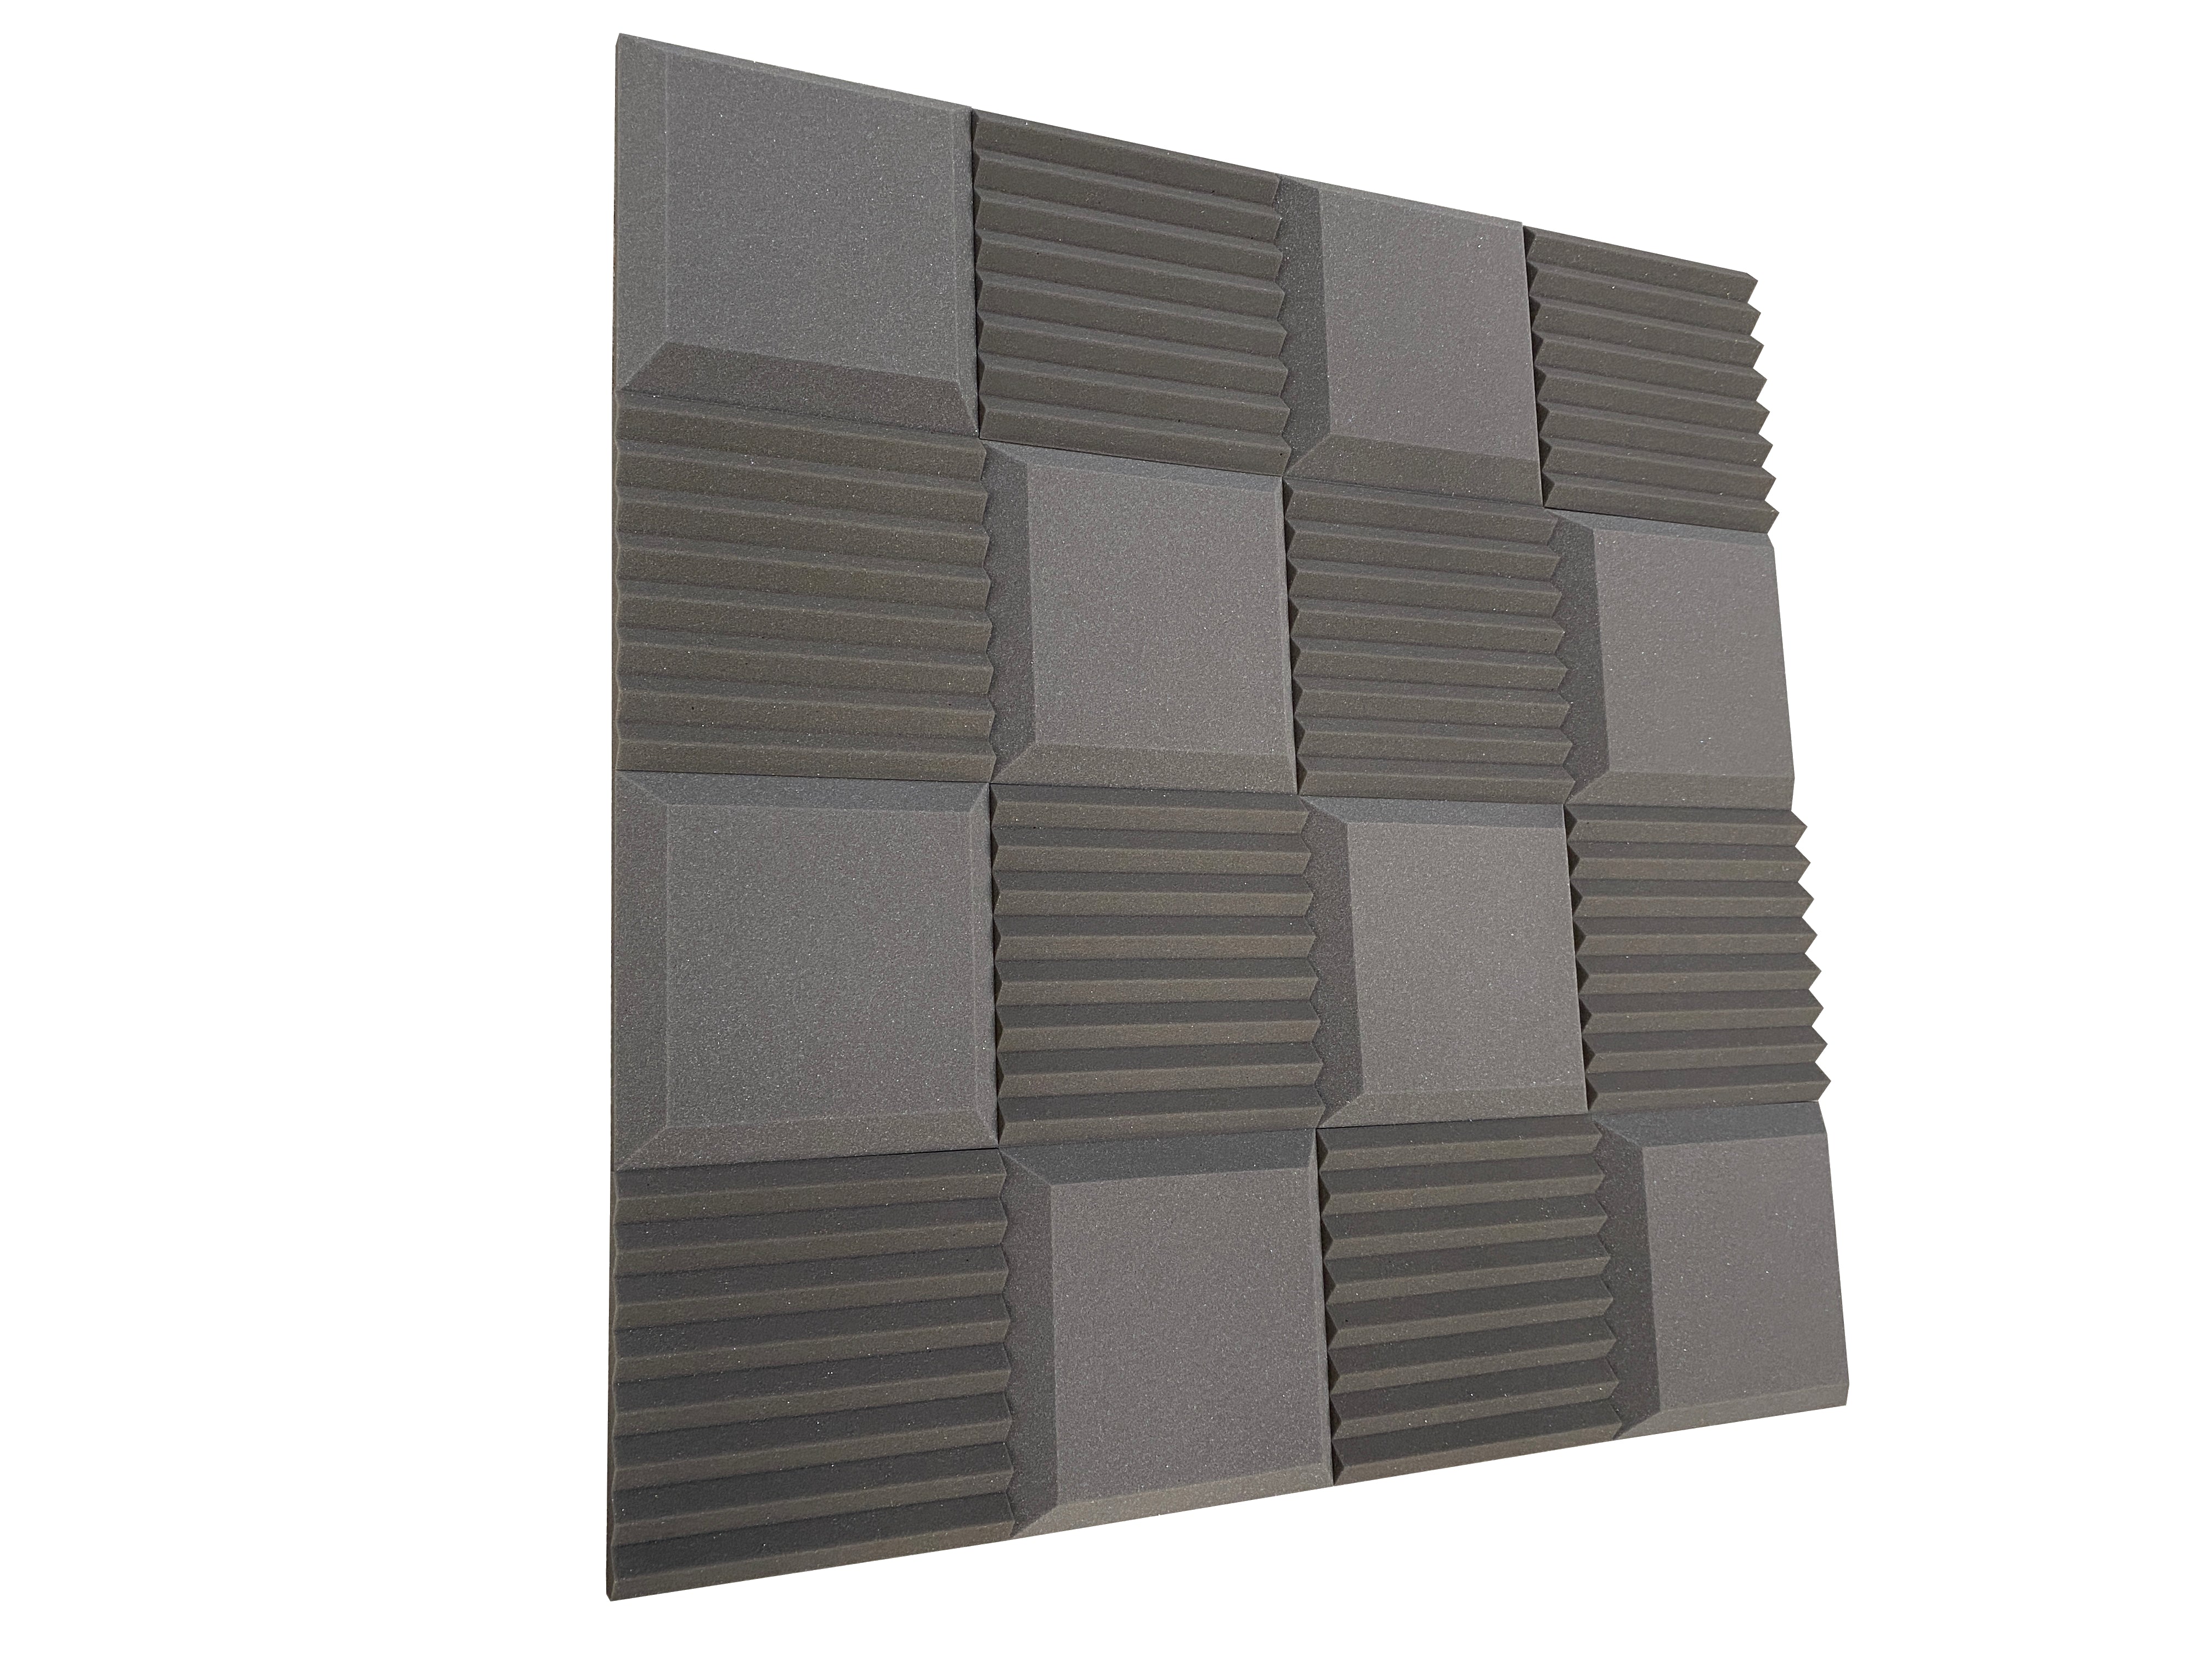 Euphonic Wedge Standard 12" Pack de dalles en mousse pour studio acoustique - 16 dalles, 1,5 m²